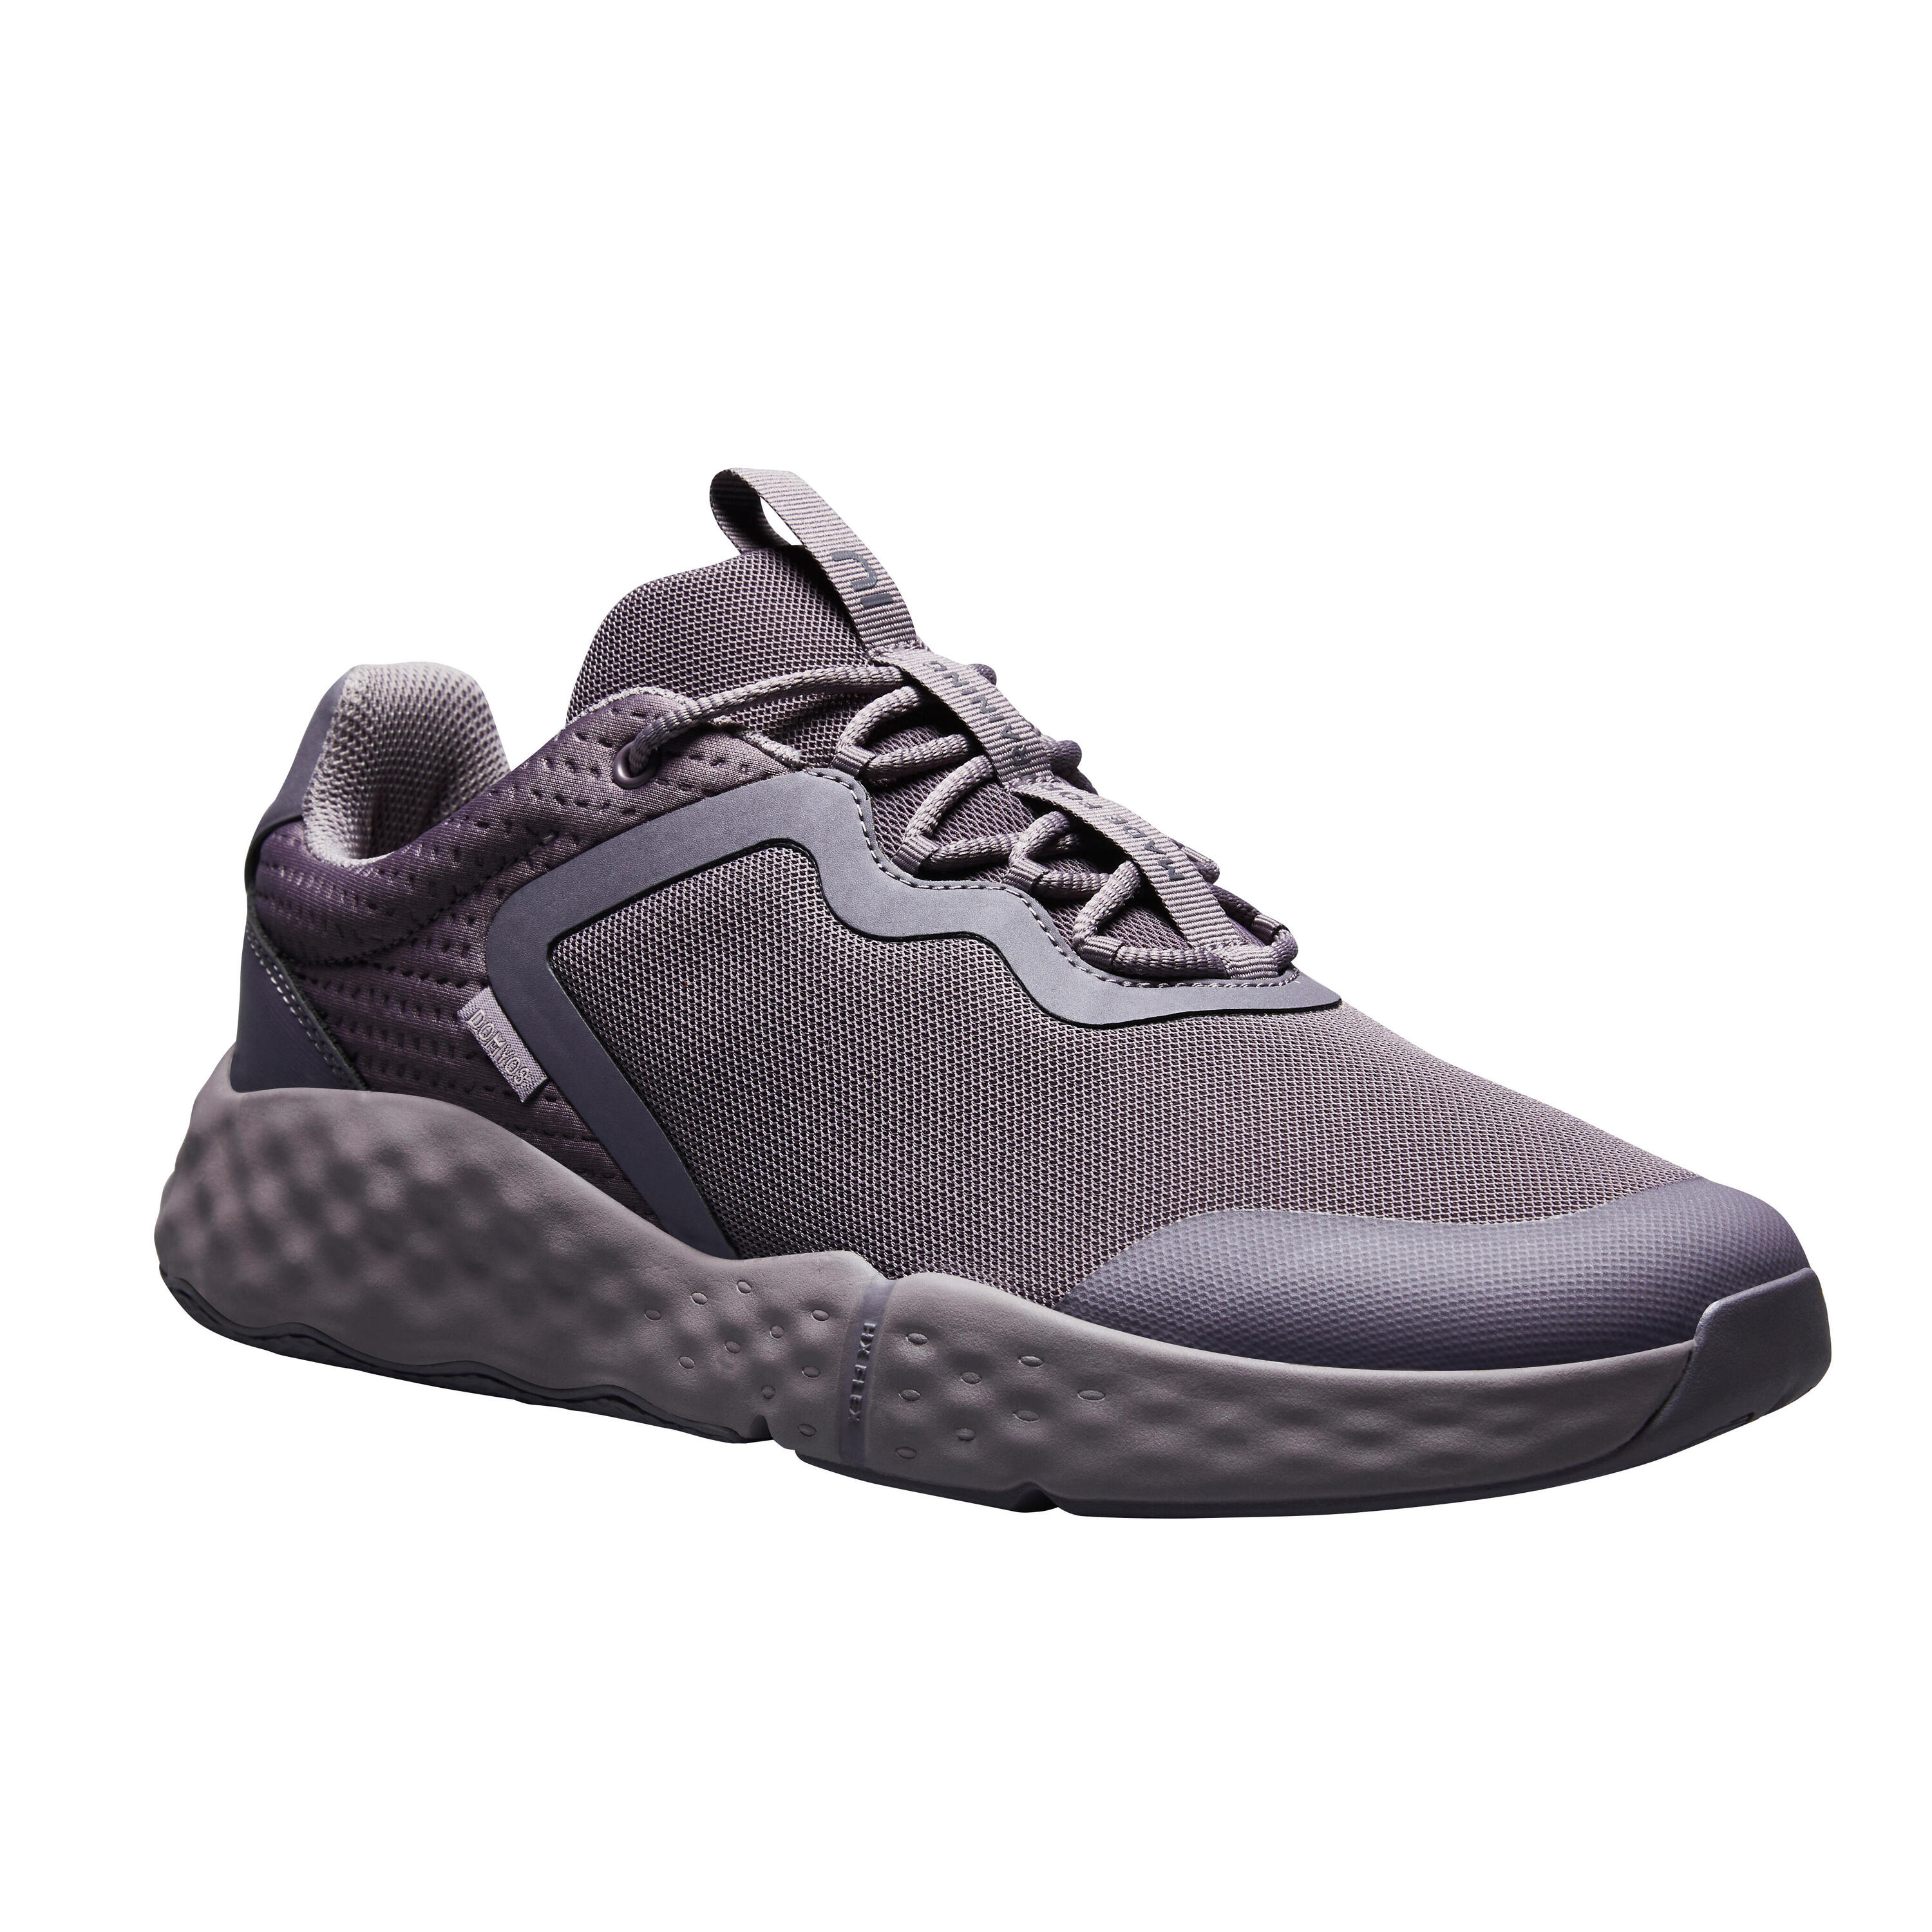 Спортивная обувь Кроссовки Fitness 520 мужские - черные DOMYOS, серо-фиолетовый/фиолетово-серый